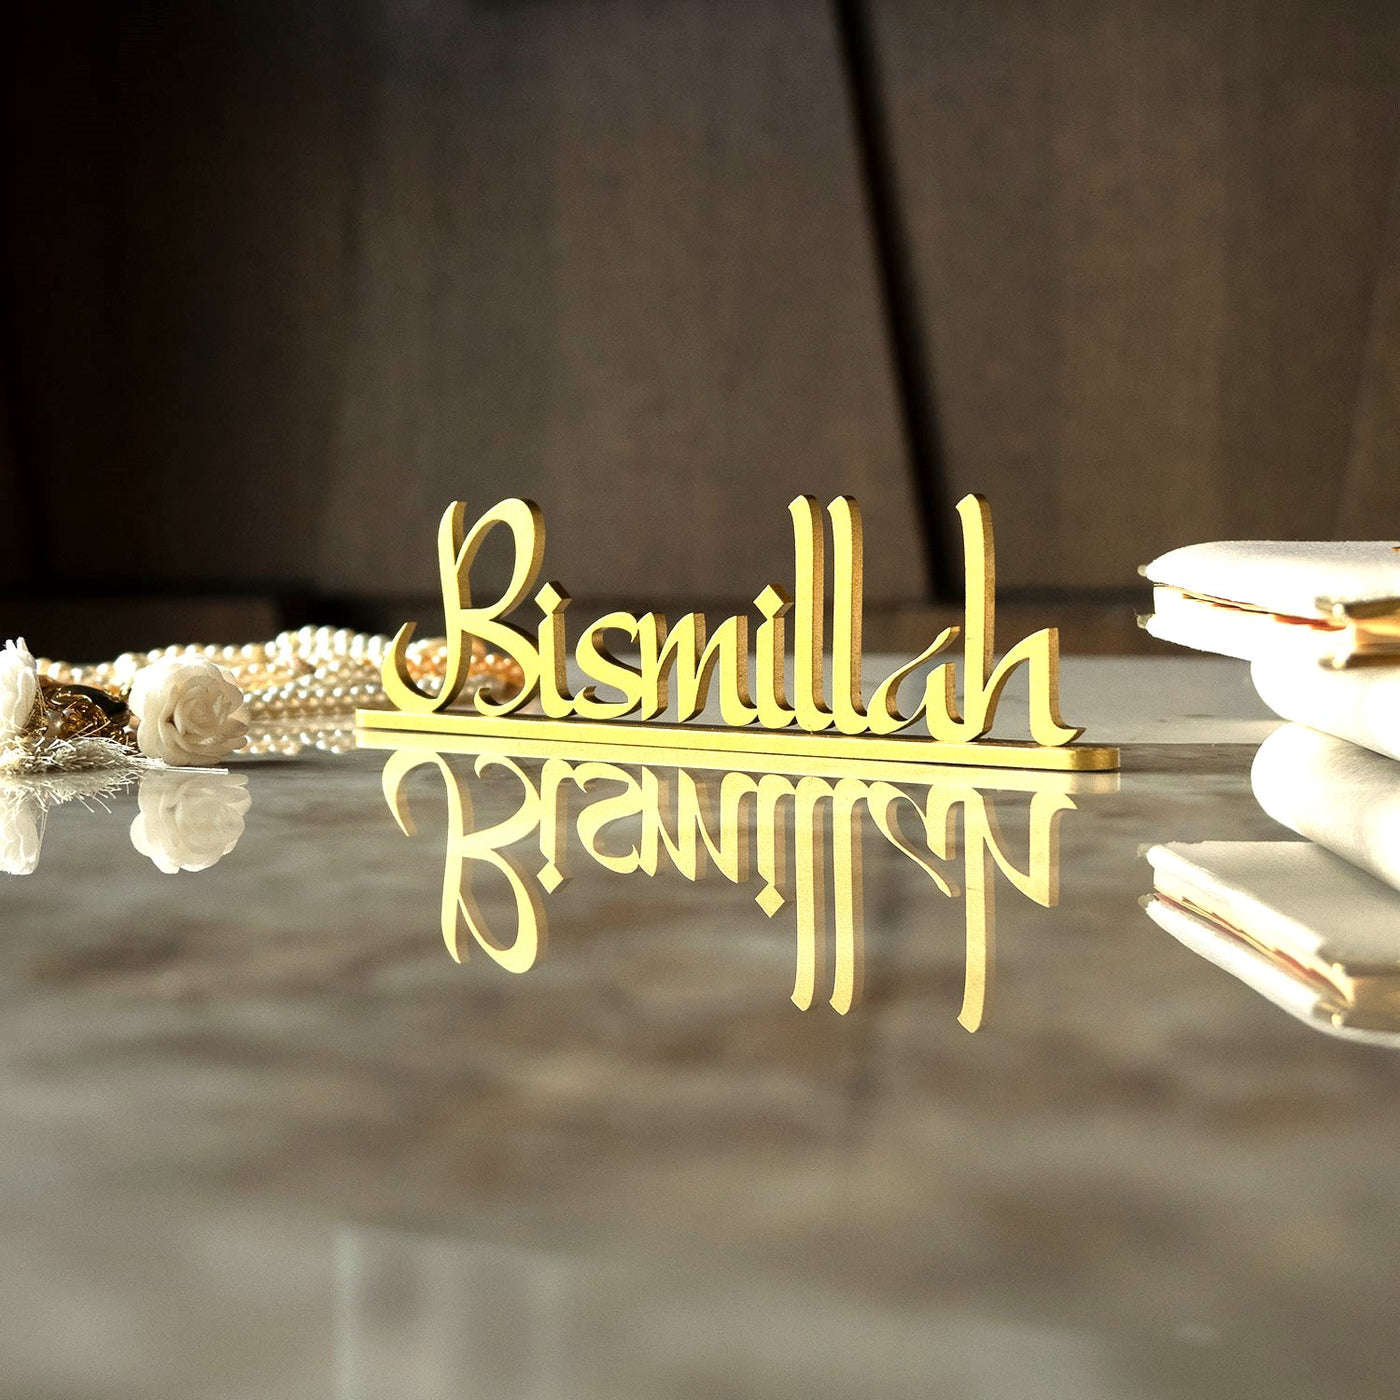 Bismillah Yazılı Metal Masaüstü Dekor - Ramazan Süslemeleri